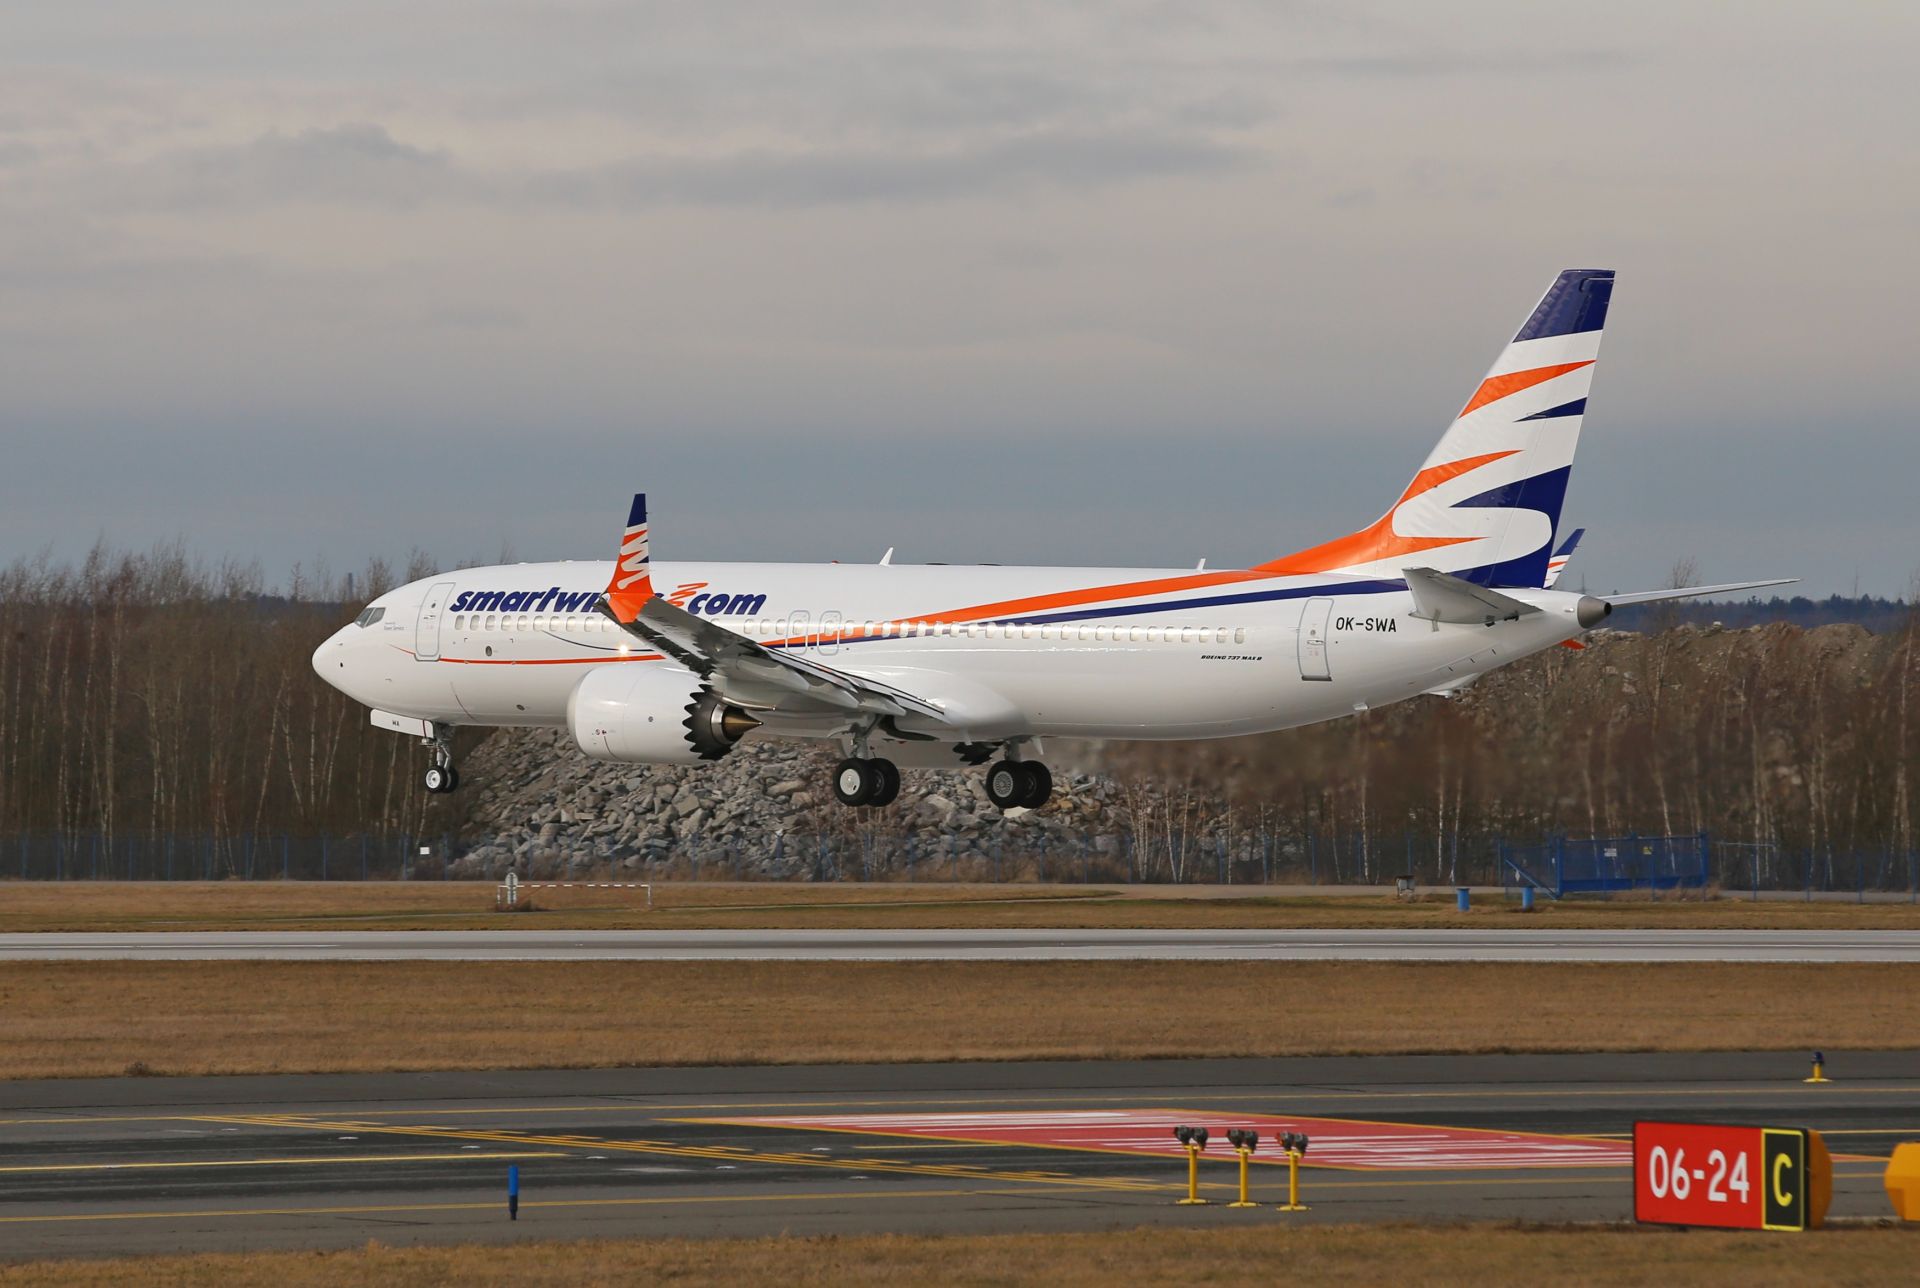 První přistání Boeingu 737 MAX 8 v barvách SmartWings na ruzyňské letiště. Foto: Letiště Praha